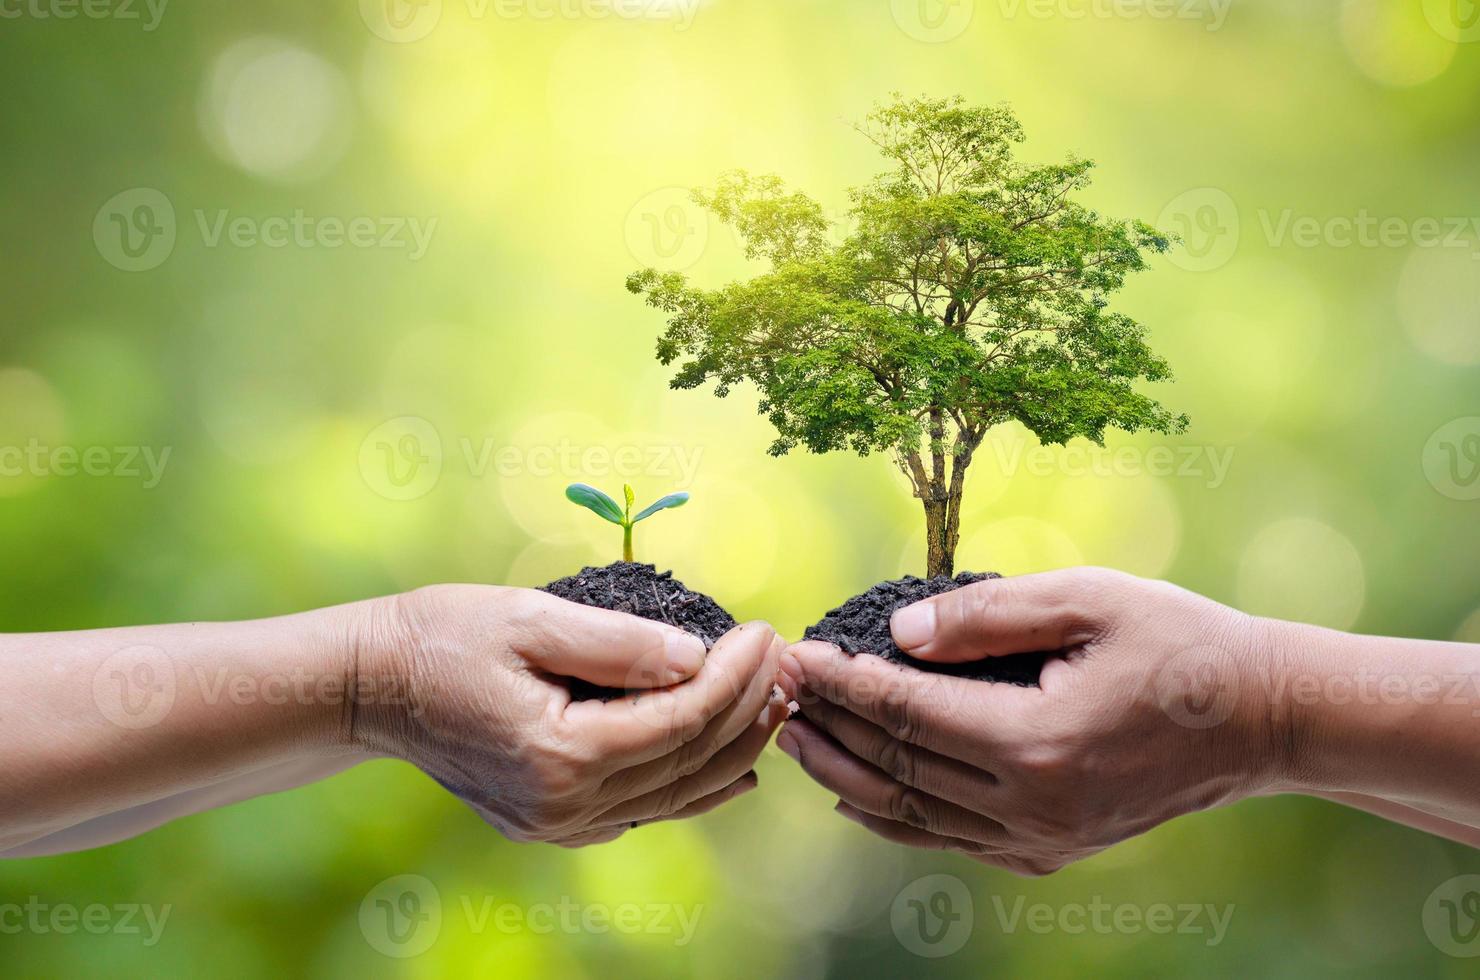 milieu aarde dag in de handen van bomen die zaailingen kweken. bokeh groene achtergrond vrouwelijke hand met boom op natuur veld gras bosbehoud concept foto